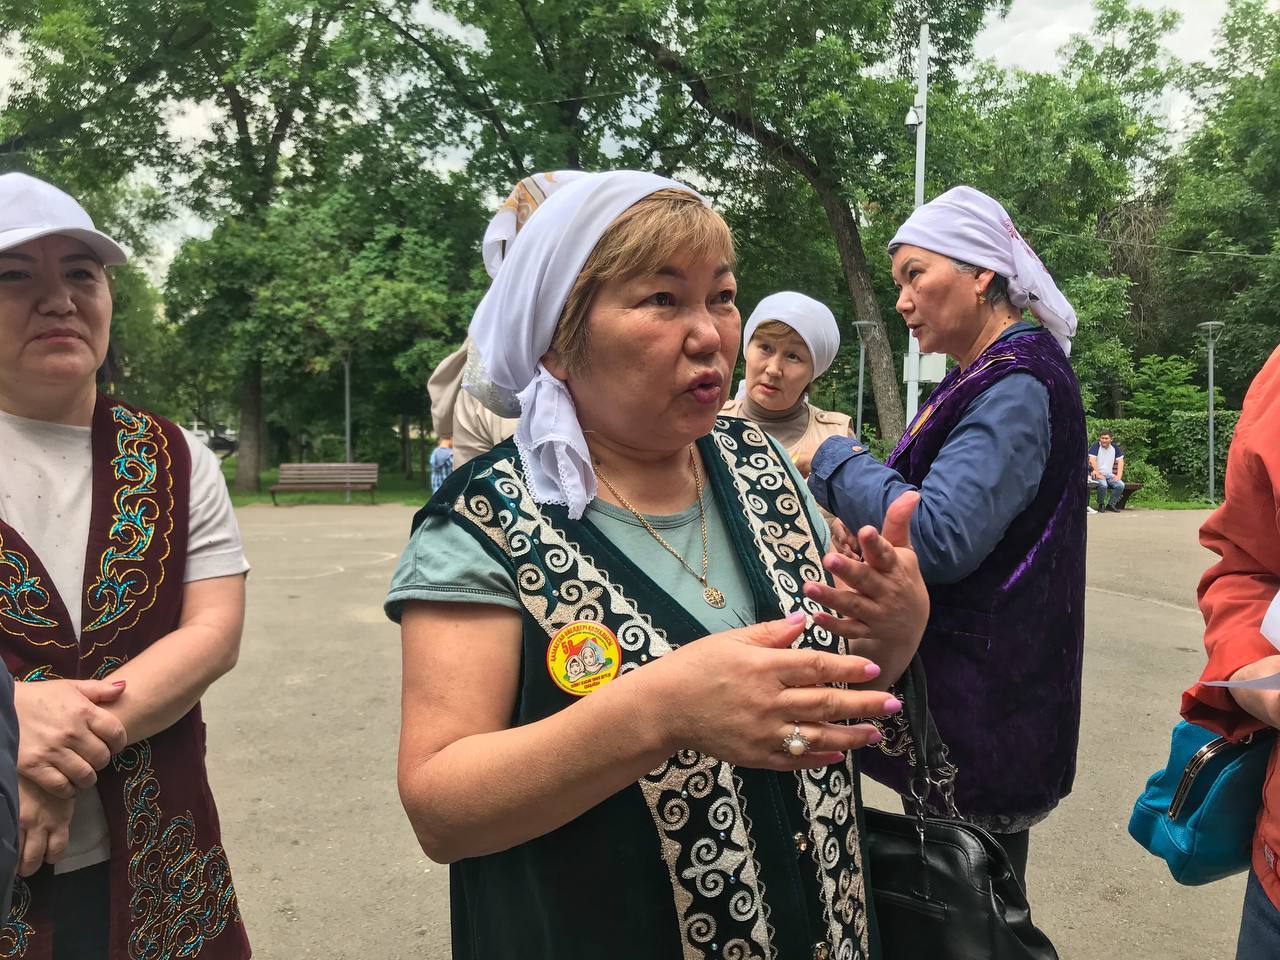 Снизить пенсионный порог до 58 лет требовали женщины в Алматы